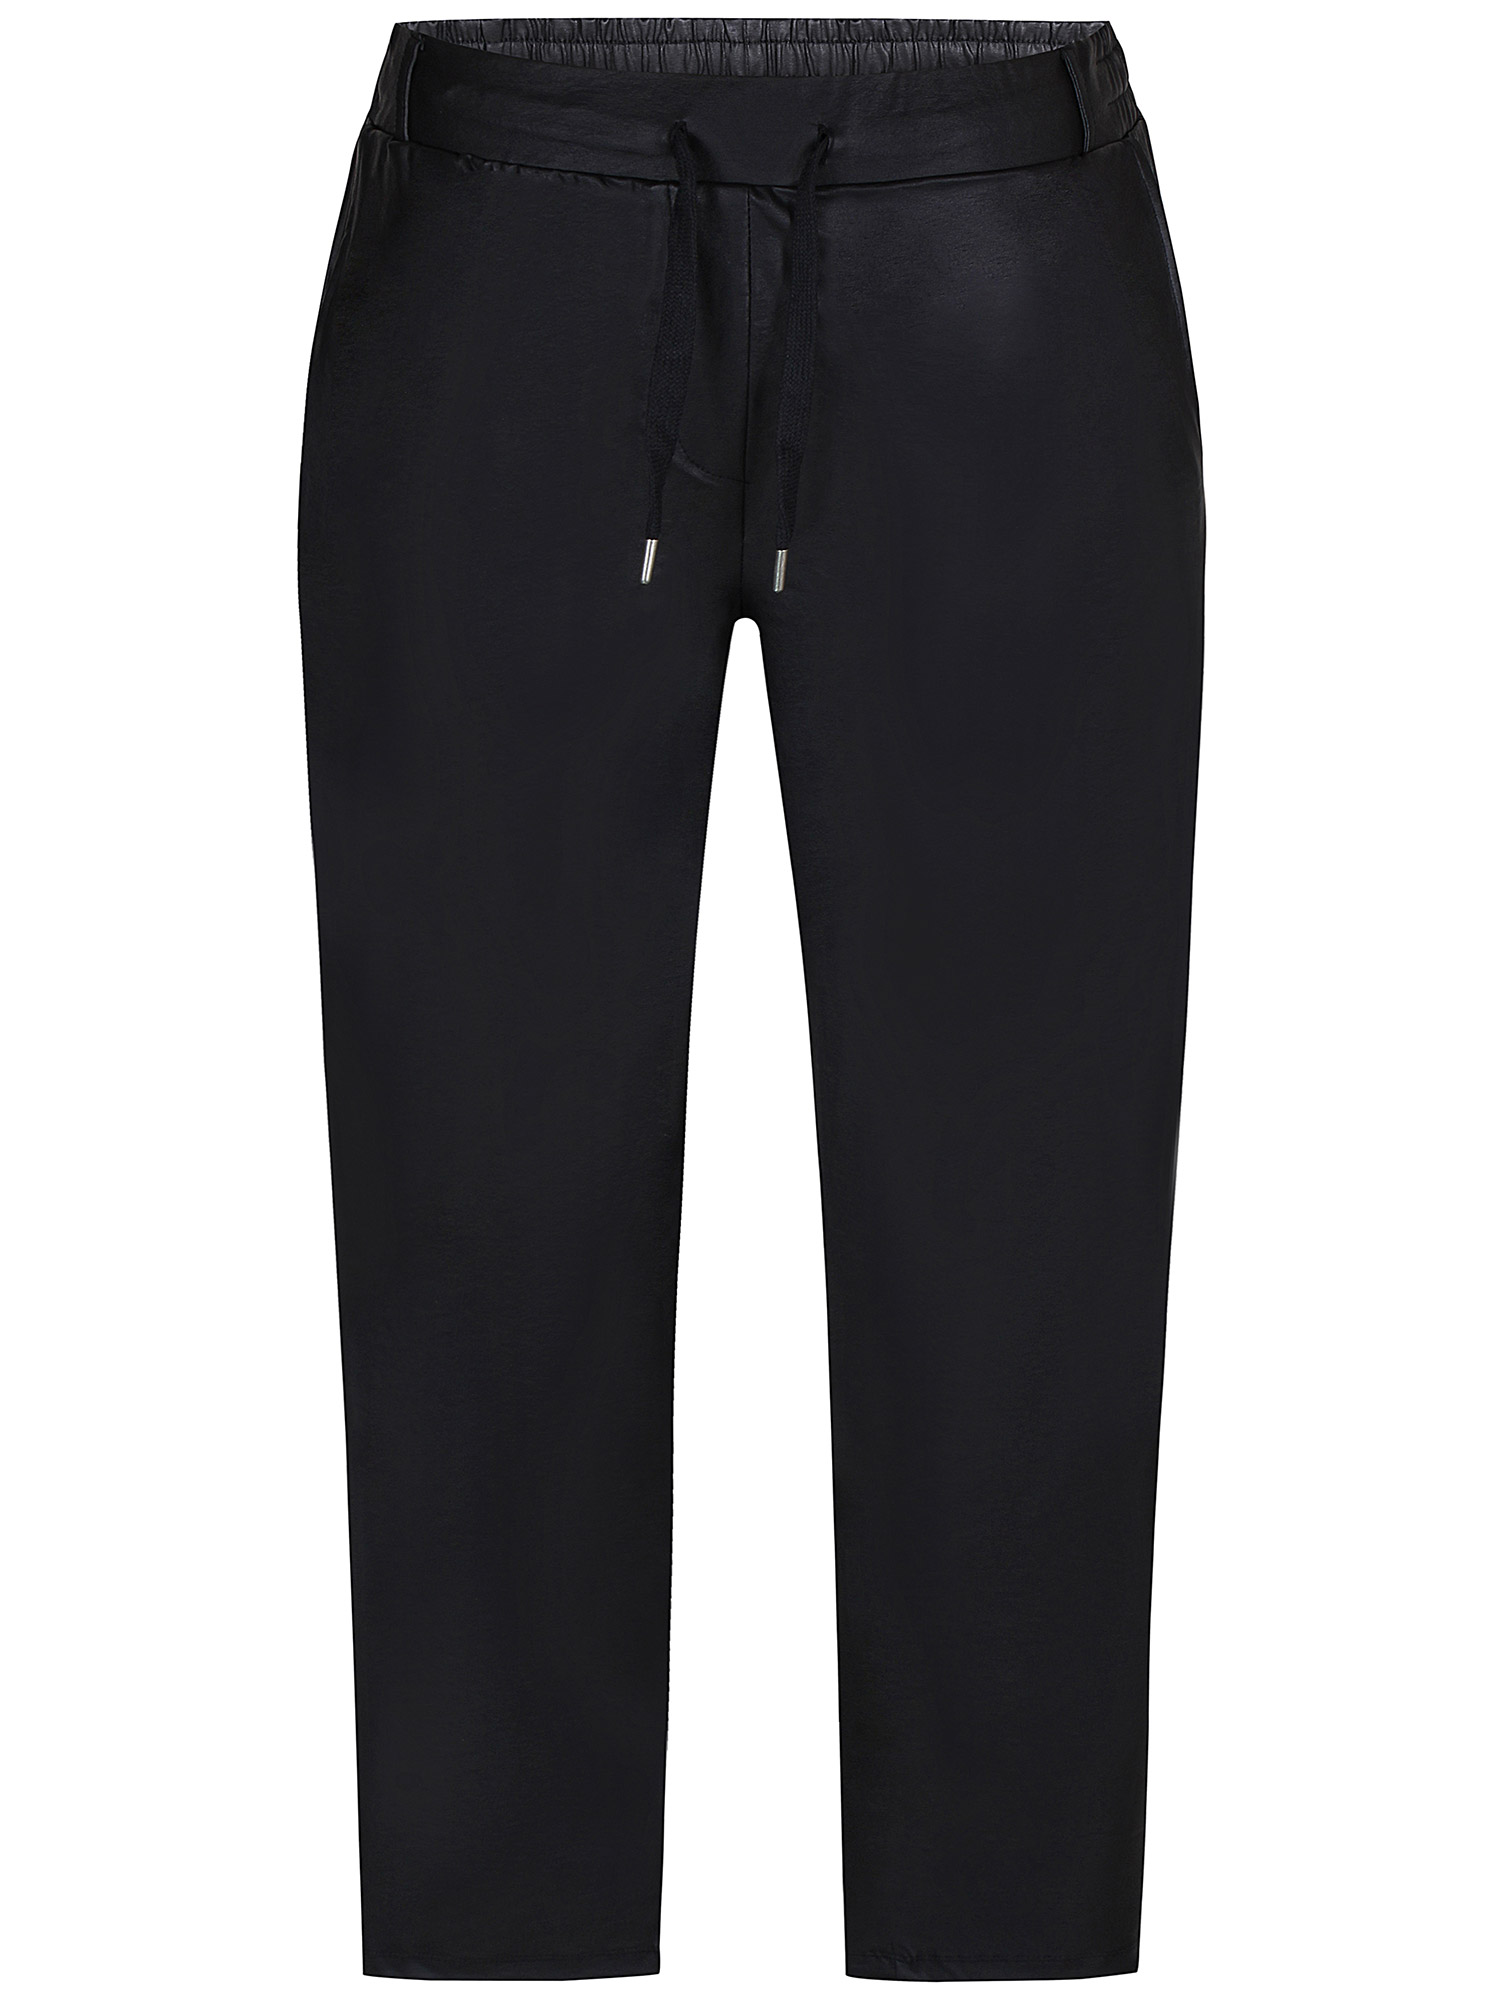 Callie - Svarte bukser i skinn look med lommer fra Zhenzi